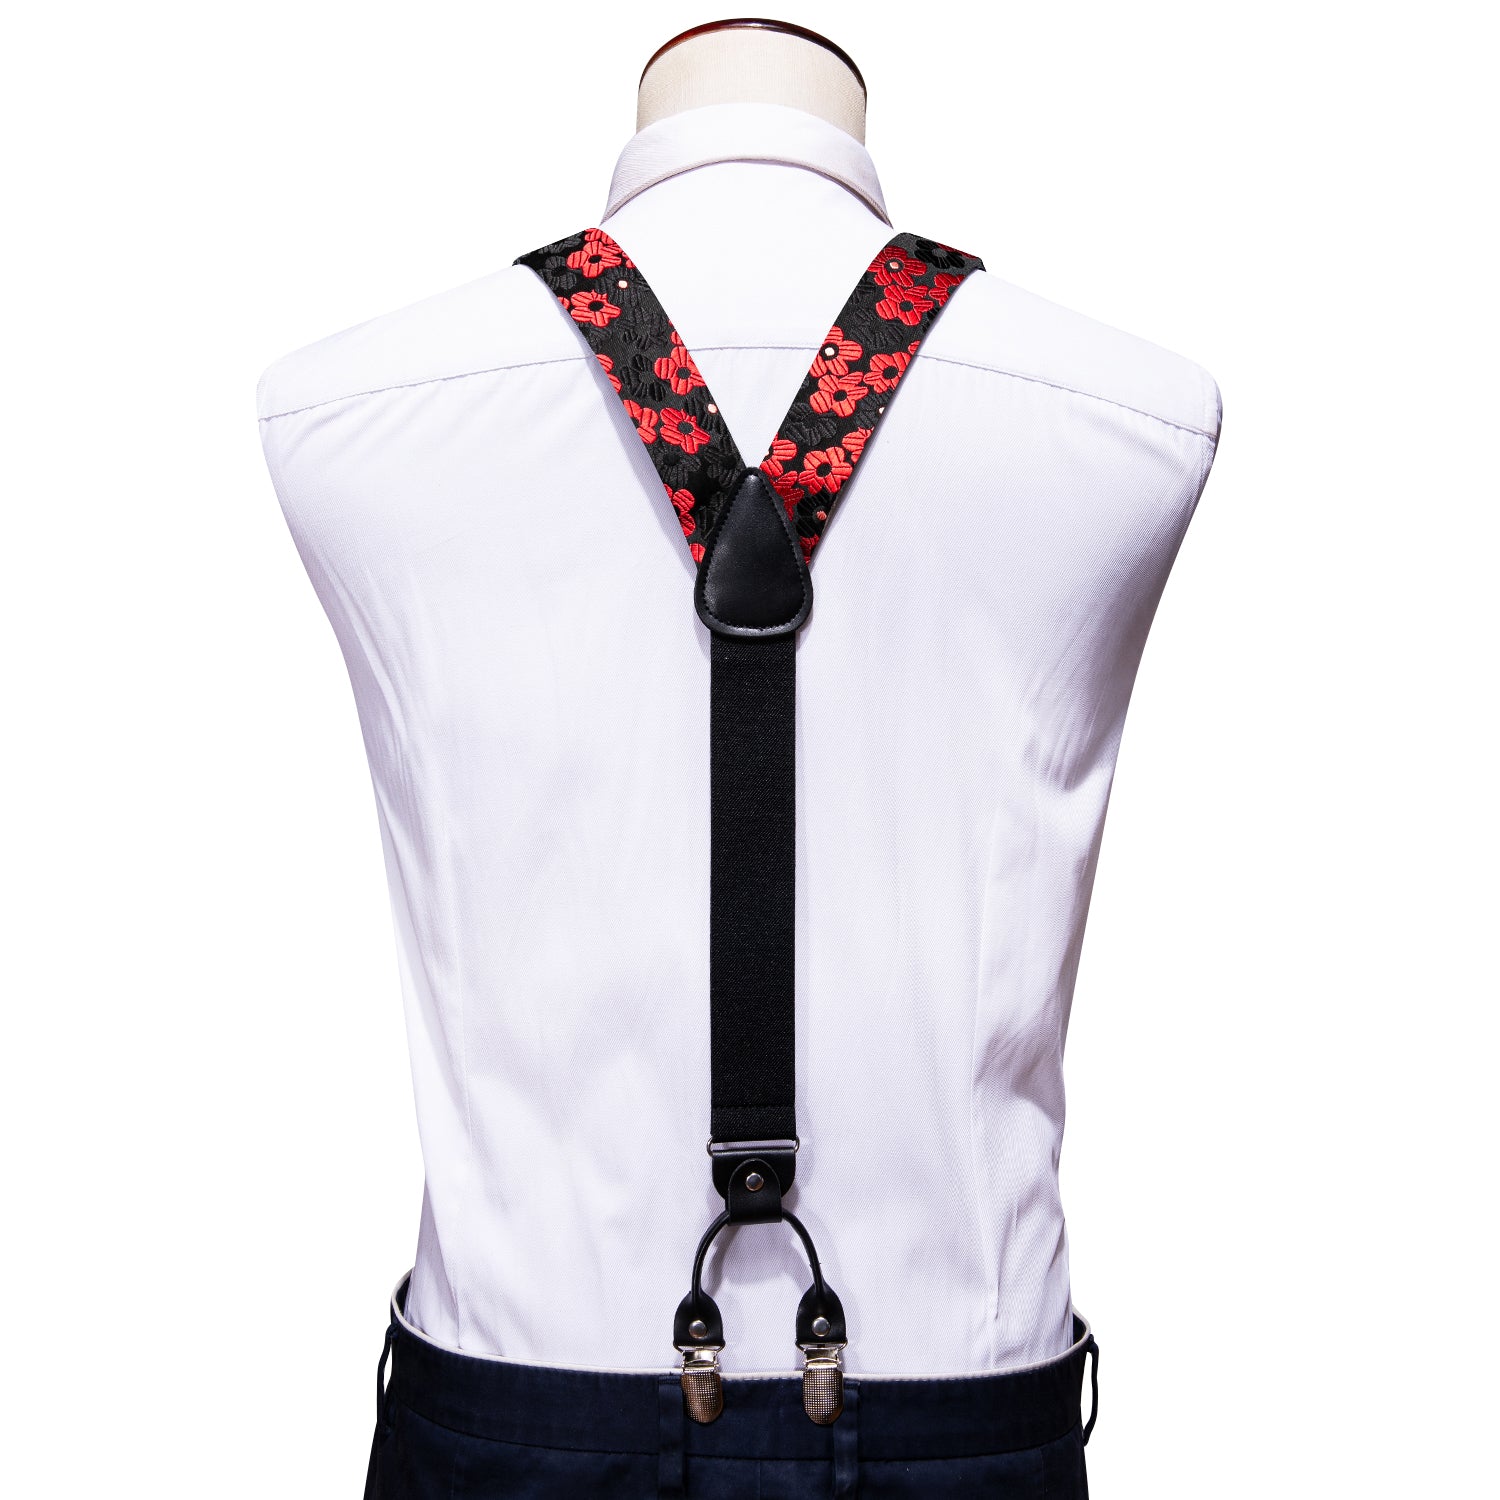 Red Black Flower Y Back Adjustable Bow Tie Suspenders Set